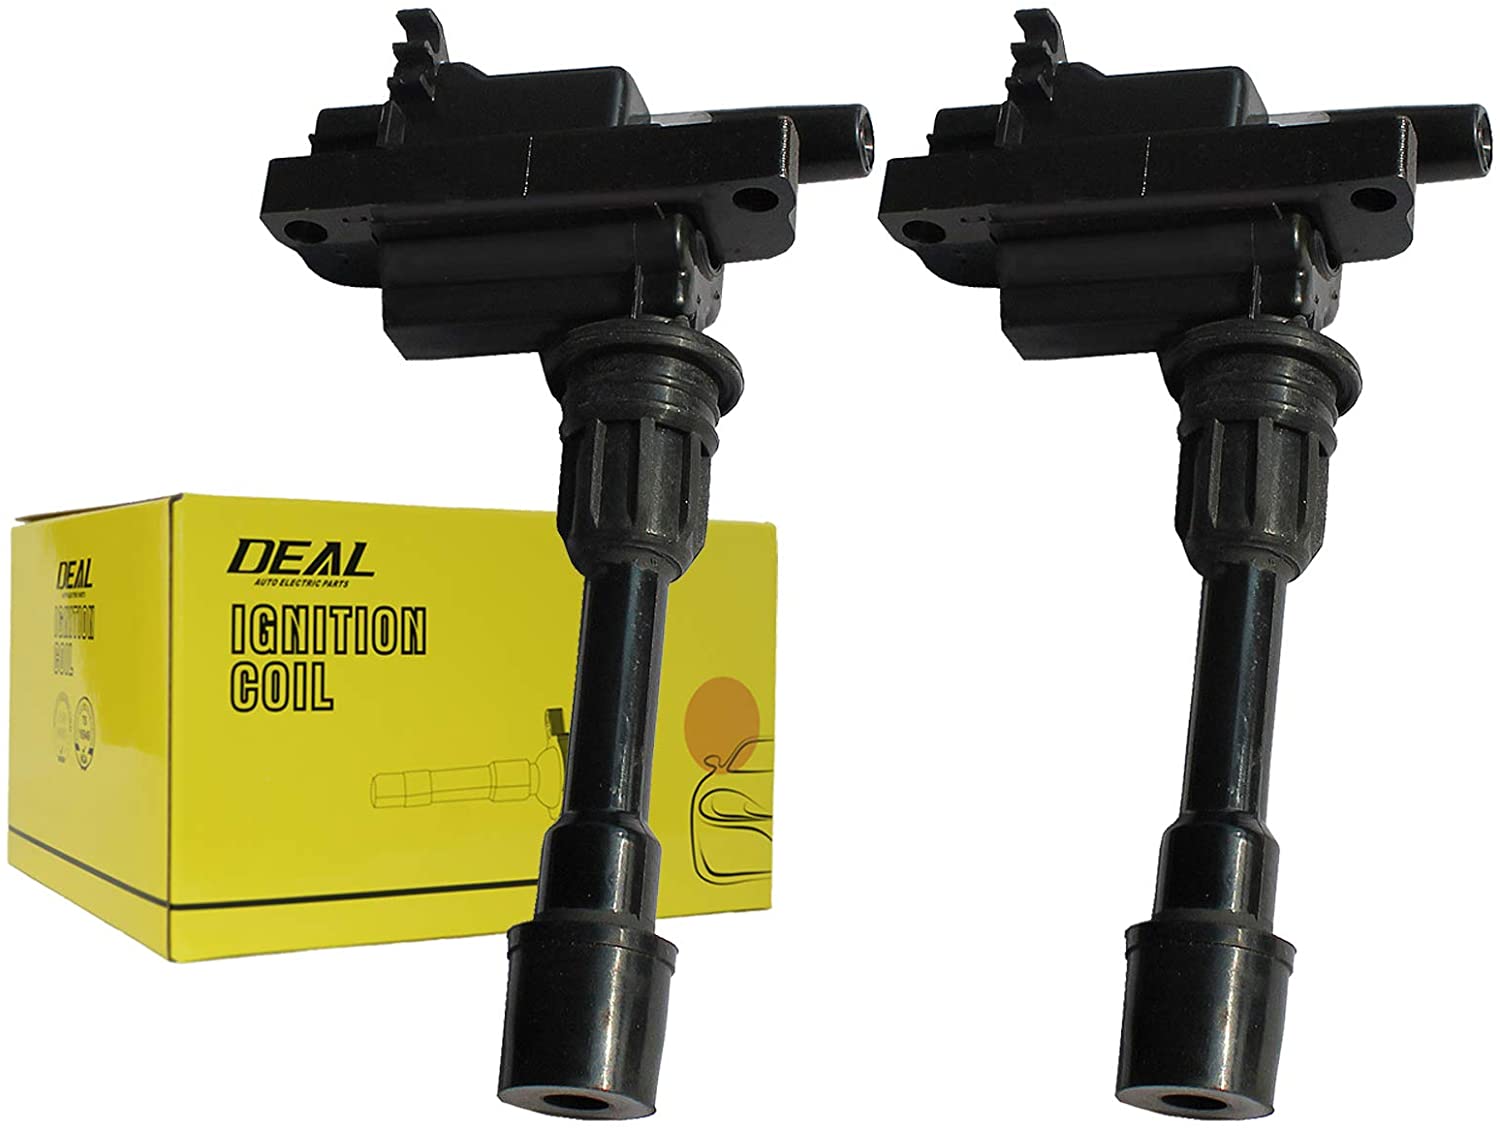 DEAL Set of 2 New Ignition Coil Plug Pack For 01-03 Mazda Protege 02-03 Mazda Protege5 L4 2.0L UF407 (2pcs)